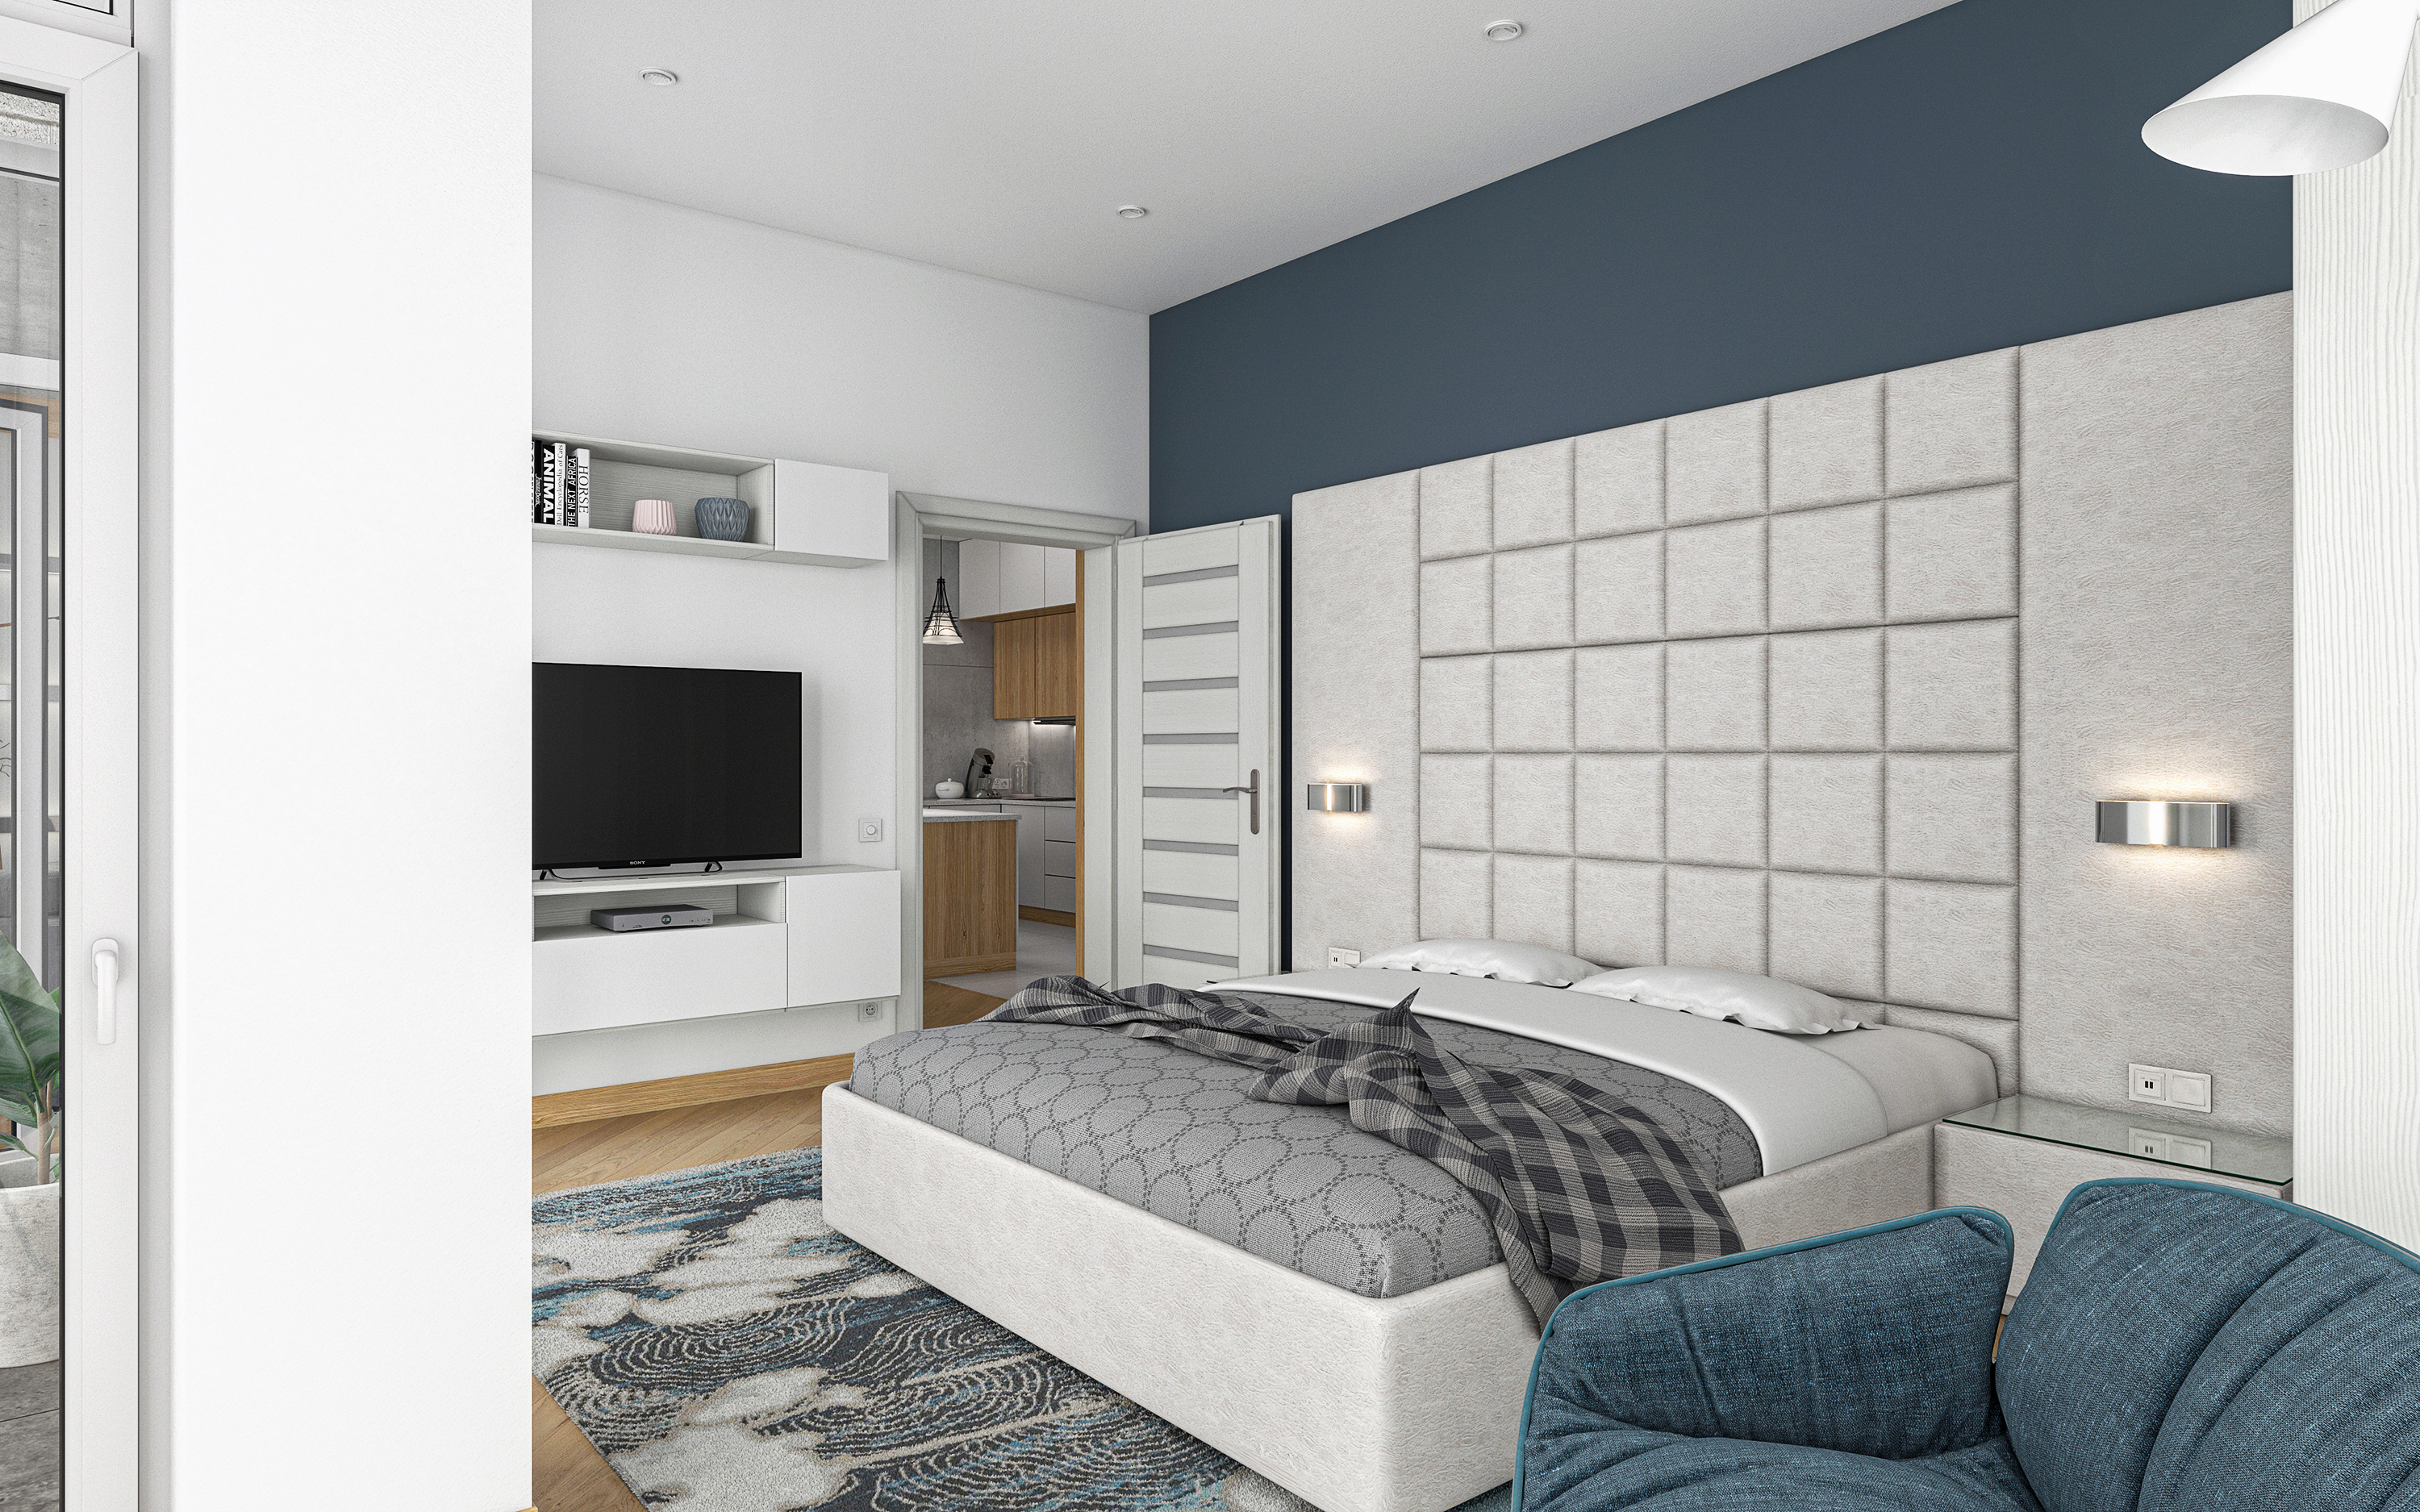 एक बेडरूम का अपार्टमेंट S68 3d max corona render में प्रस्तुत छवि